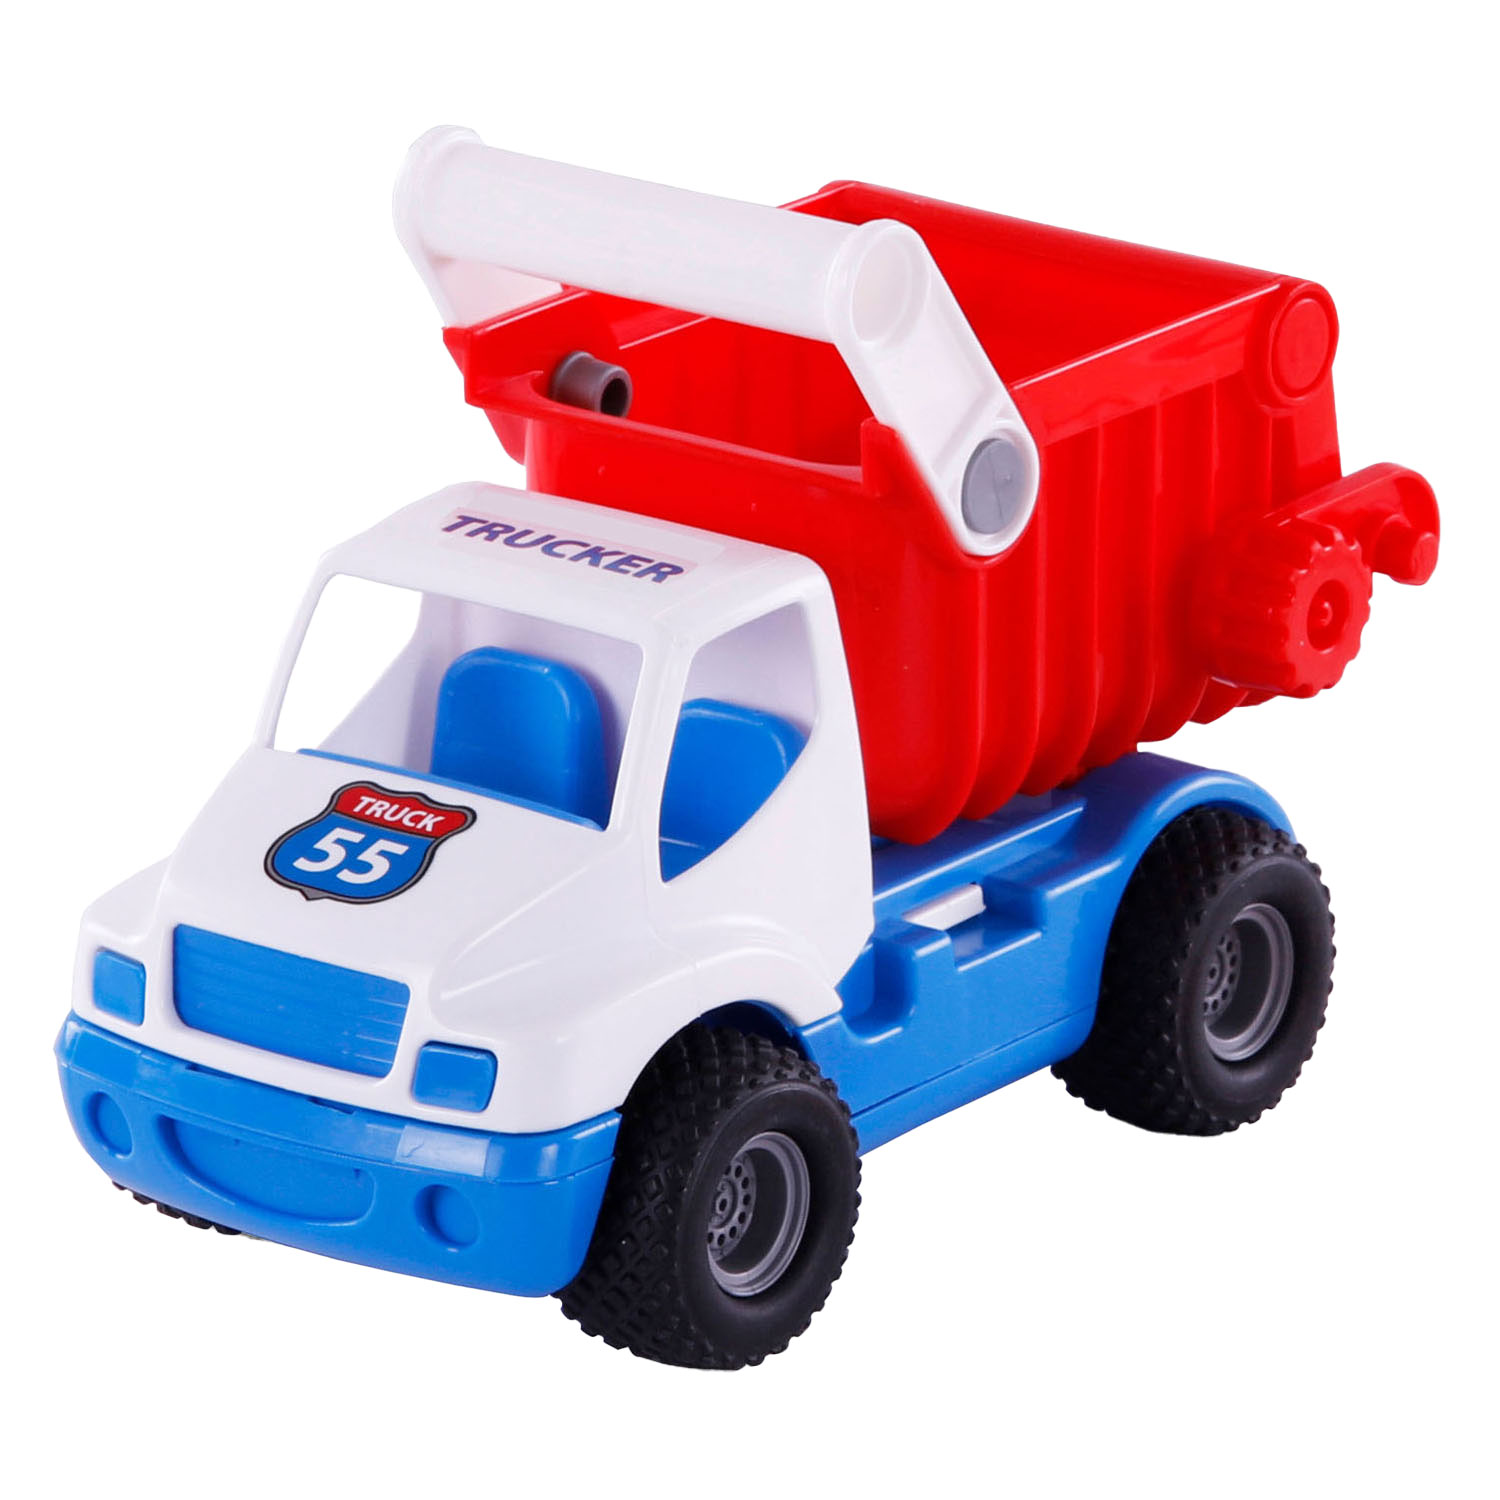 Cavallino Toys Cavallino Grip Kiepvrachtwagen met Rubberbanden, 26cm